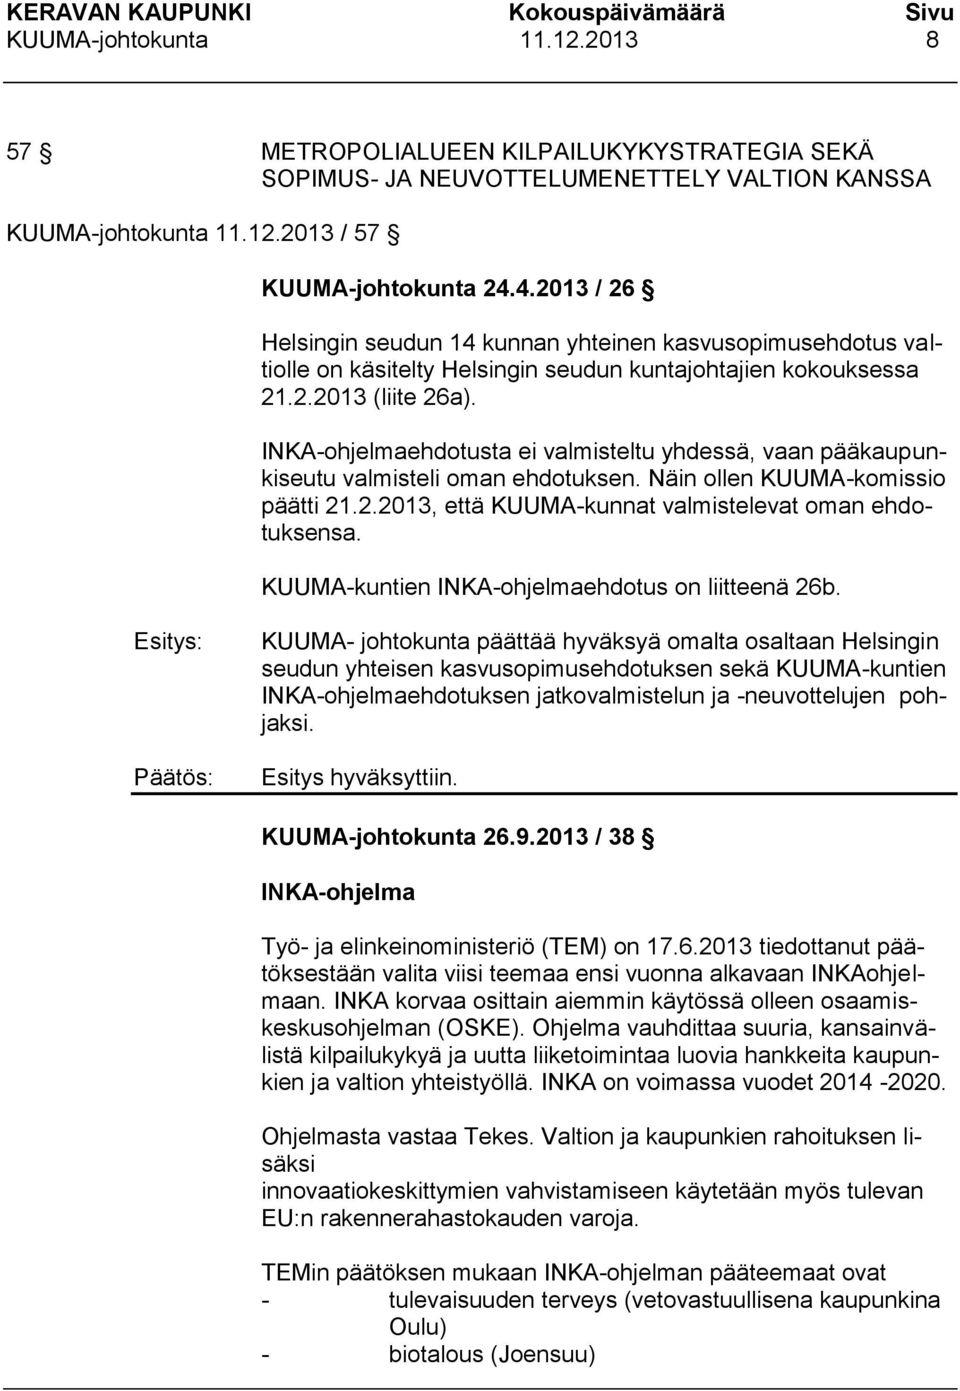 INKA-ohjelmaehdotusta ei valmisteltu yhdessä, vaan pääkaupunkiseutu valmisteli oman ehdotuksen. Näin ollen KUUMA-komissio päätti 21.2.2013, että KUUMA-kunnat valmistelevat oman ehdotuksensa.